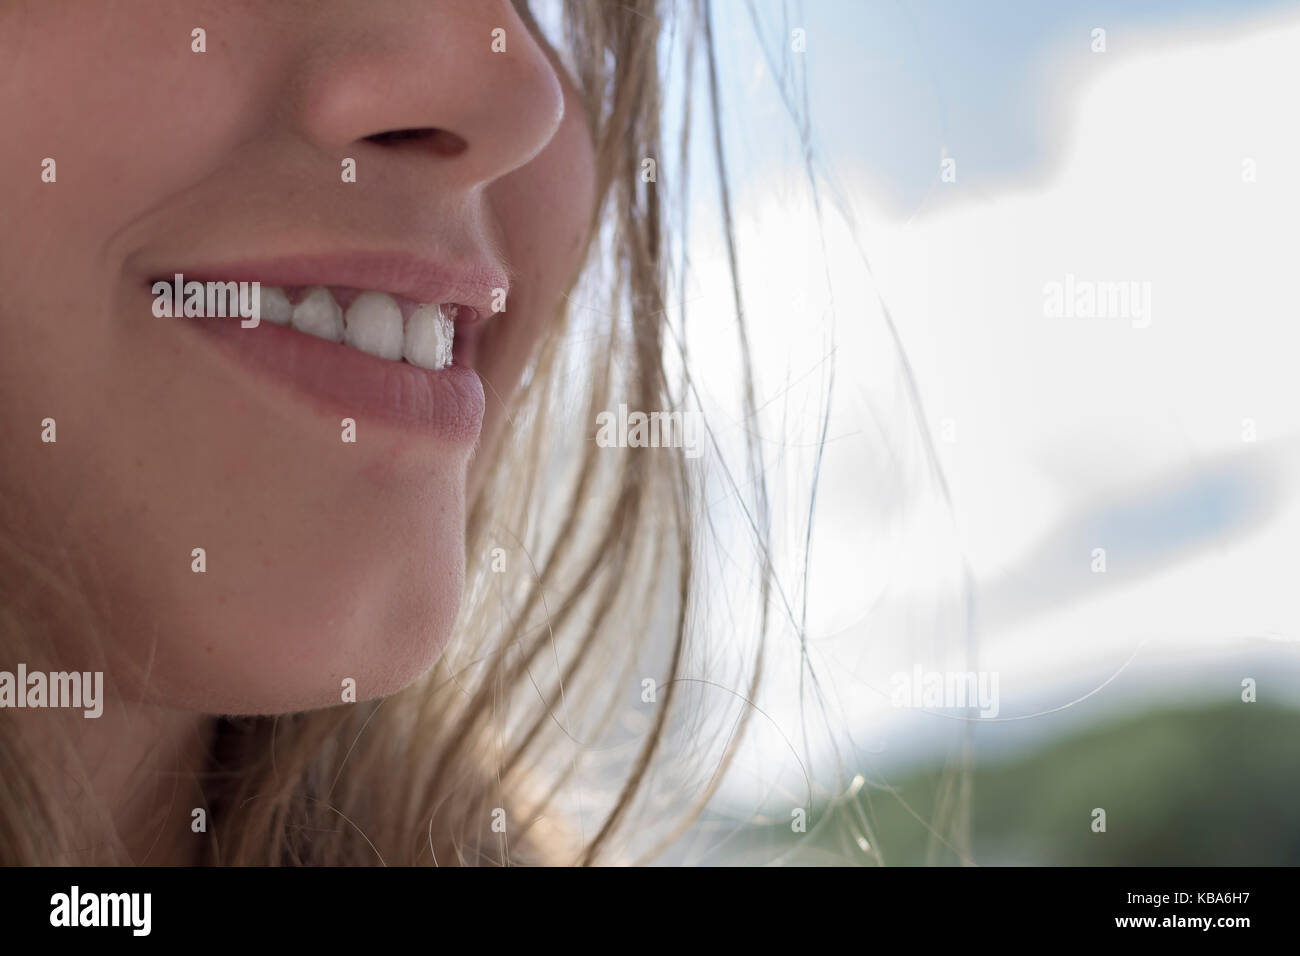 Immagine ritagliata di una donna sorridente Foto Stock